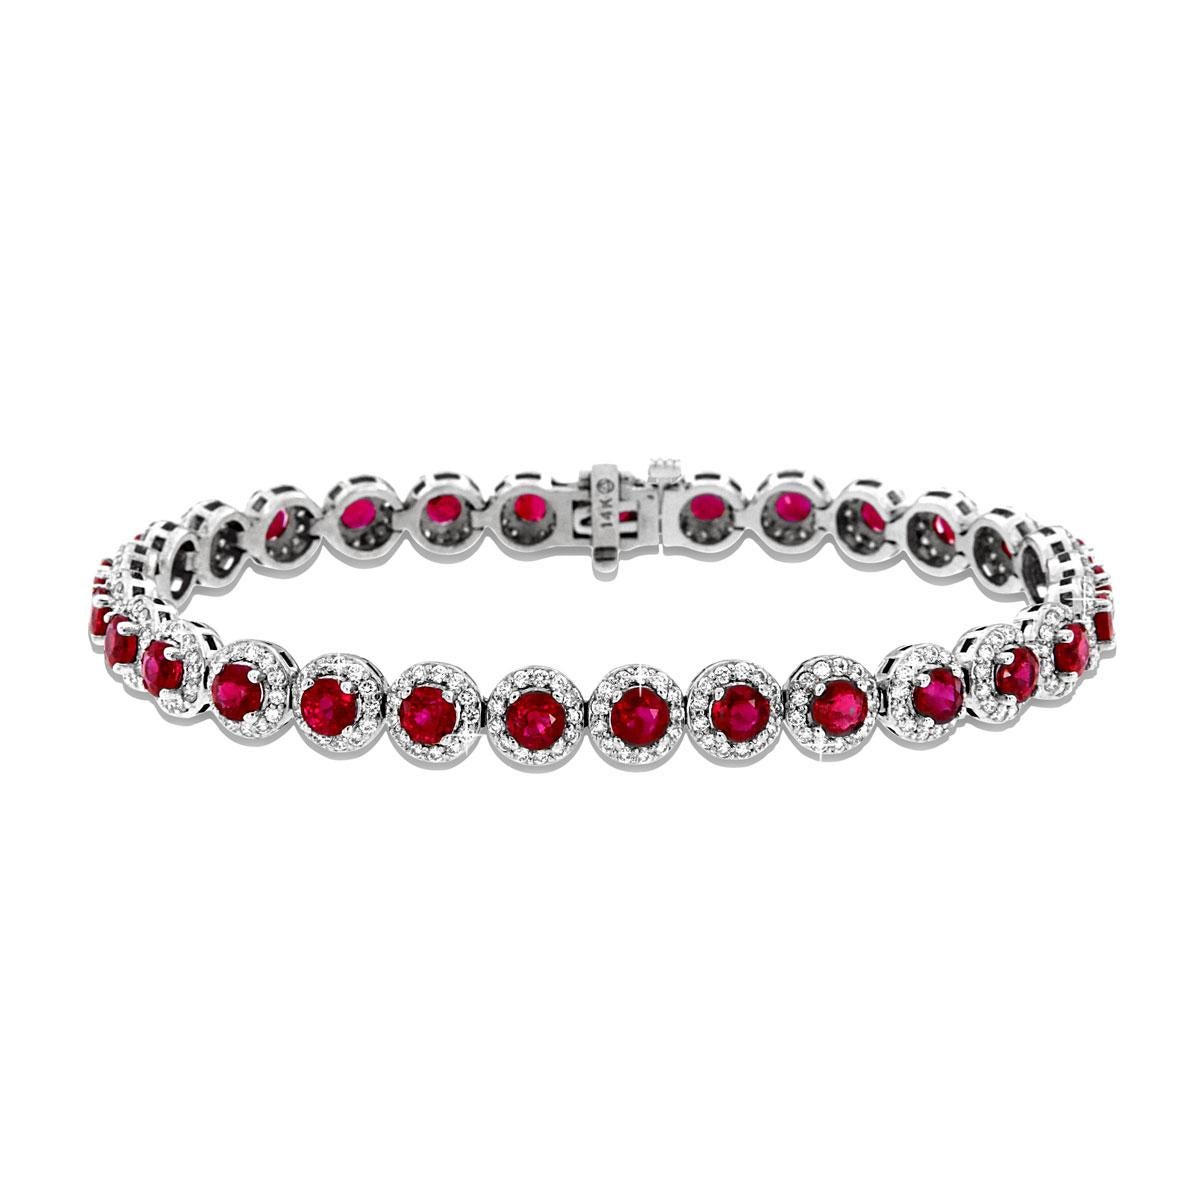 Ce bracelet artisanal présente 29 rubis birmans de couleur rouge pigeon parfaitement assortis pour un total de 10,13 carats. Les rubis sont taillés en diamant et présentent un éclat extraordinaire ! Ils sont entourés de 377 diamants ronds pleine